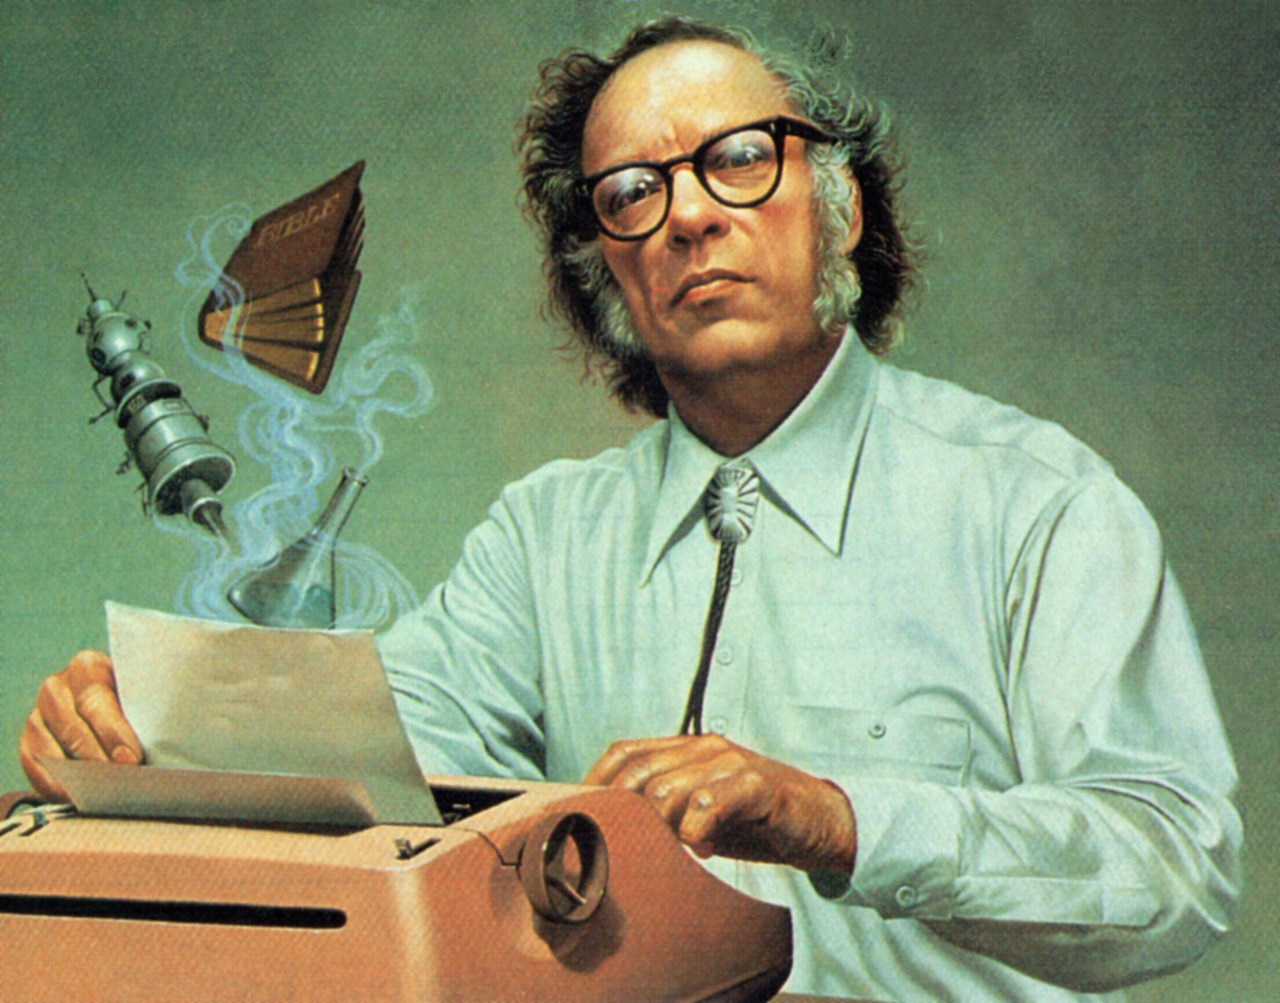 Dr. Asimov at his typewriter